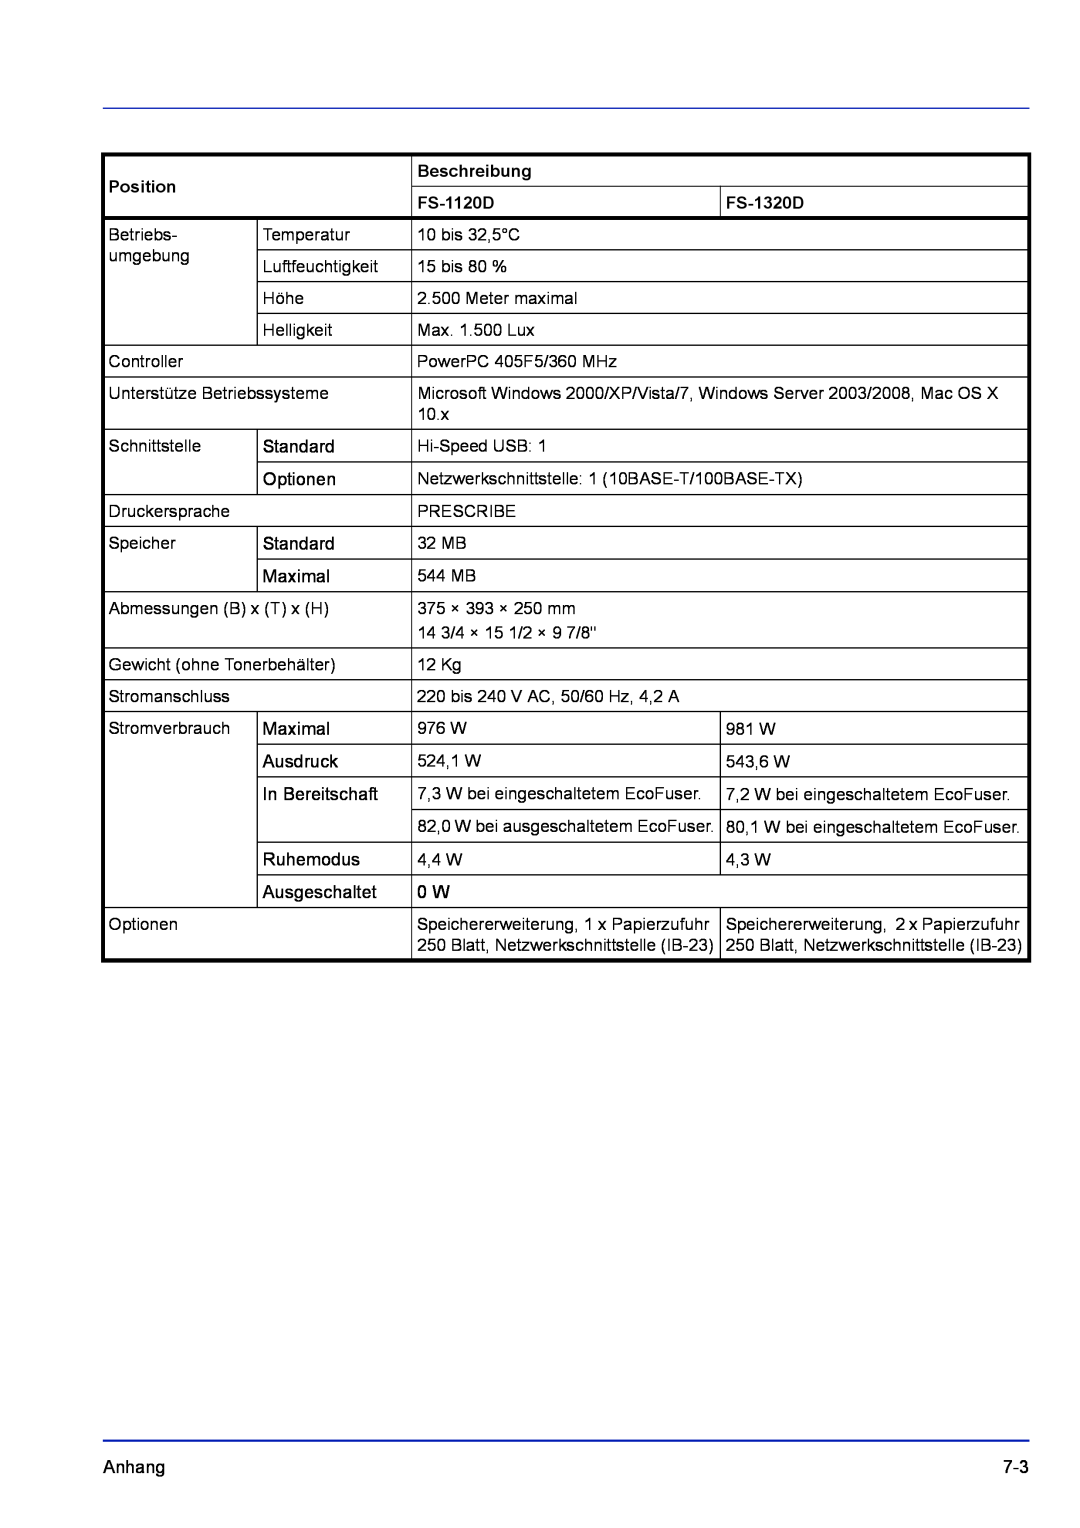 Kyocera FS-1320D manual Position, Beschreibung, FS-1120D 